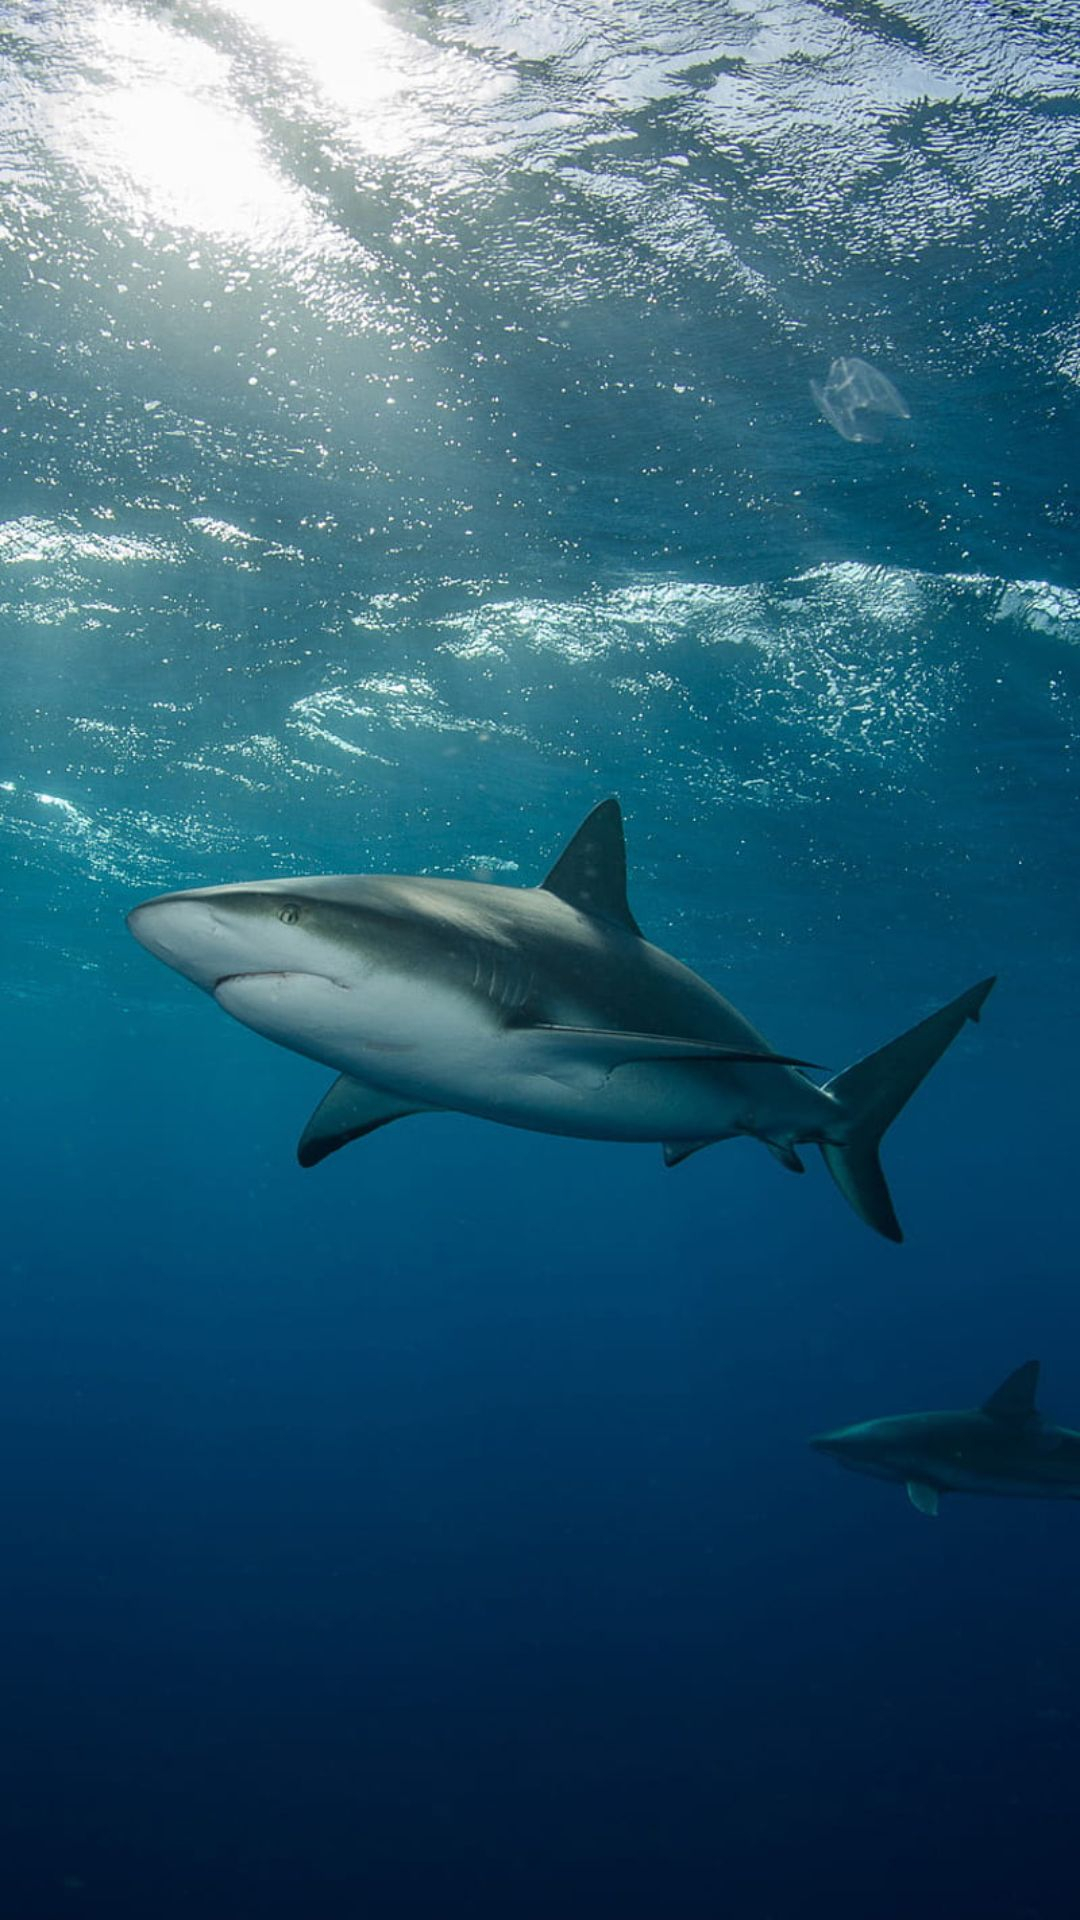 1080x1920 Shark Wallpapers Top Best Quality Shark Backgrounds (HD,4k